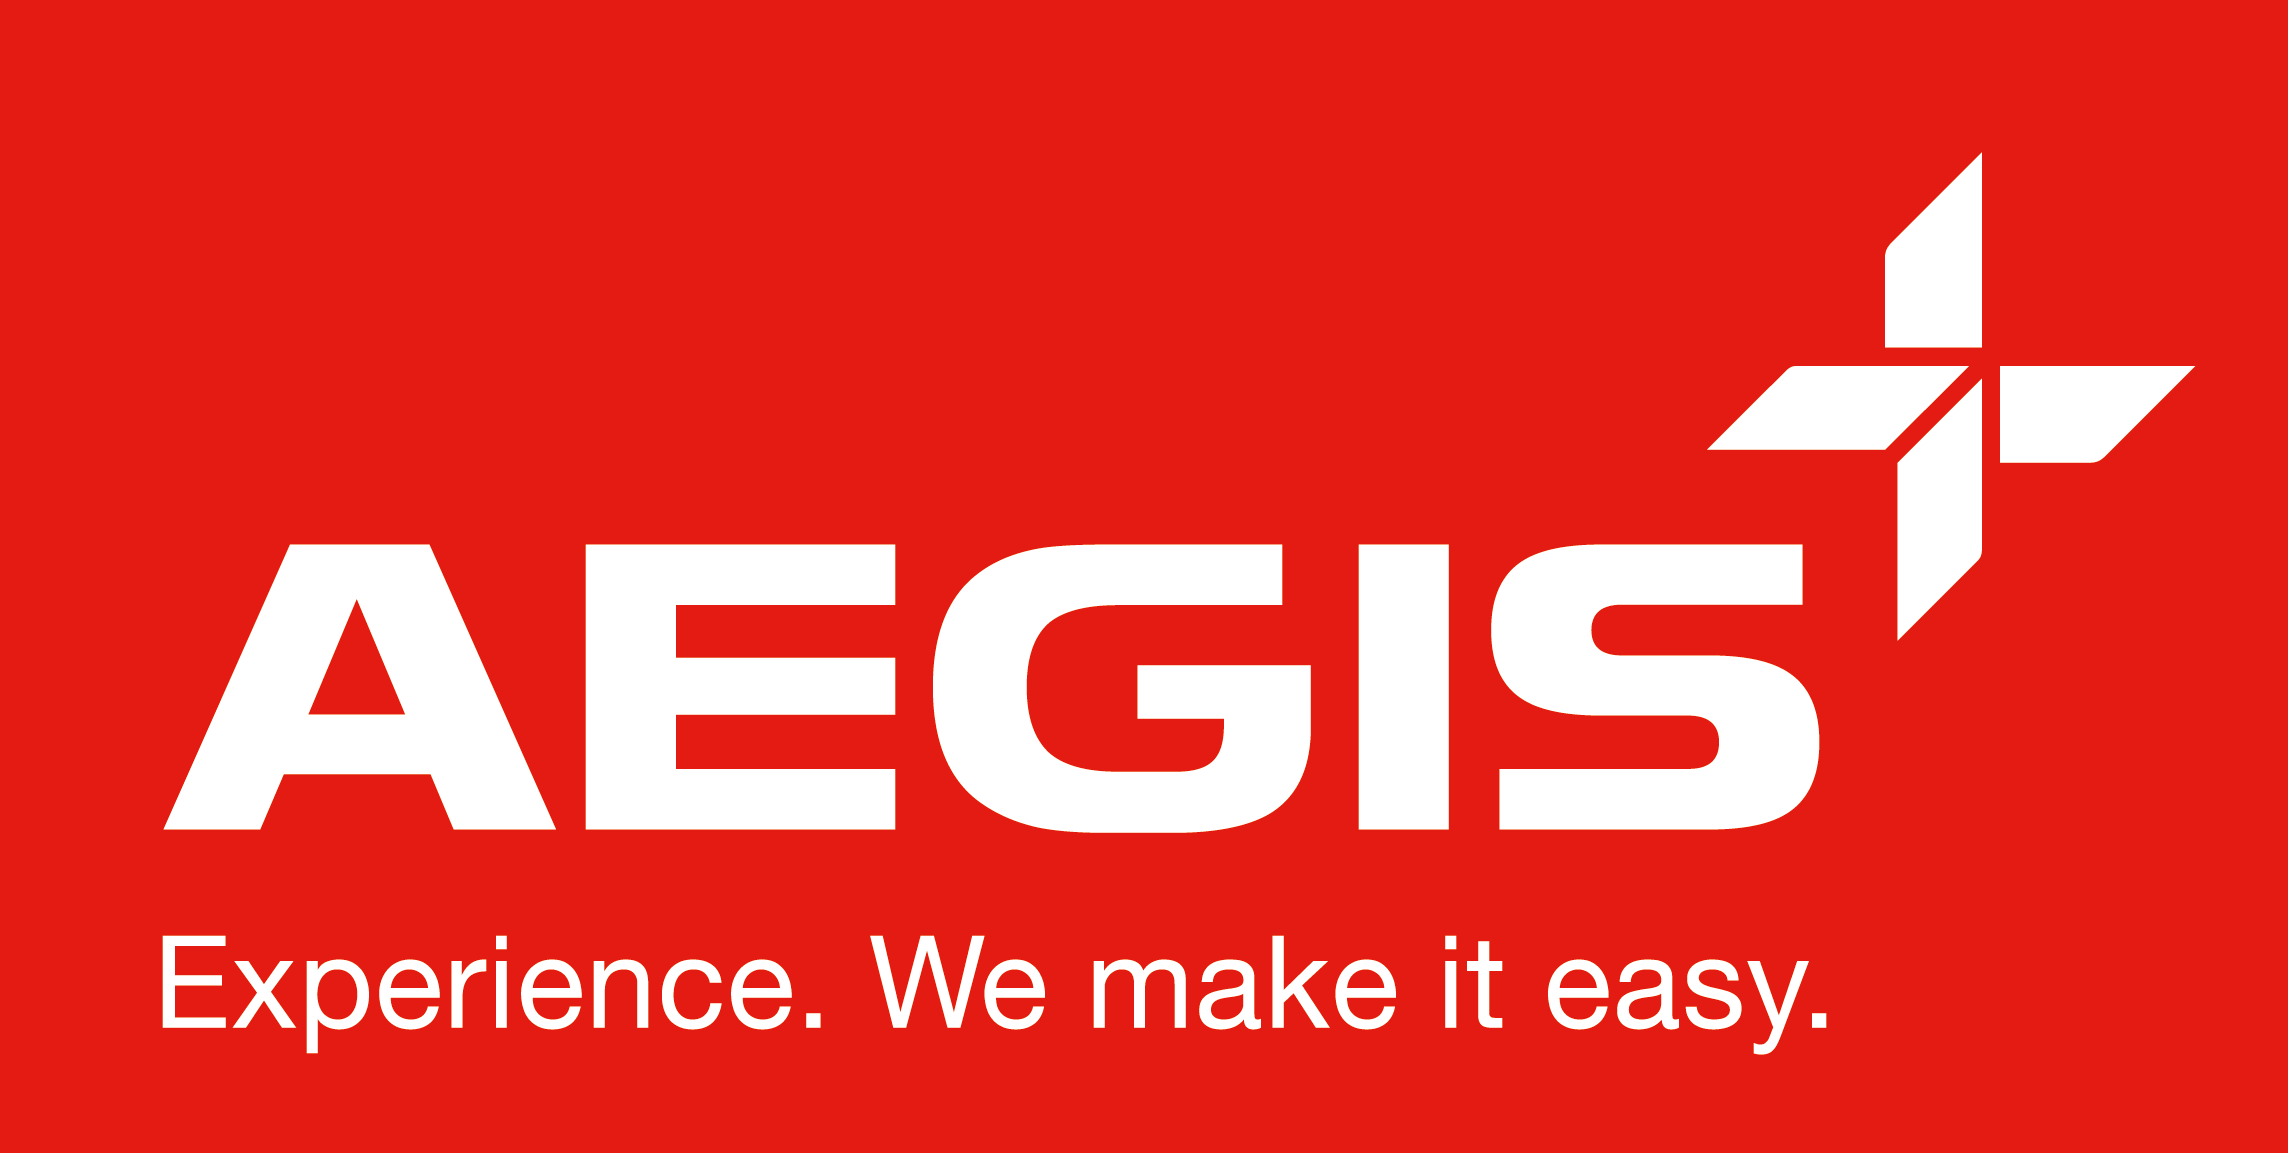 Aegis Logo - Aegis bpo Logos